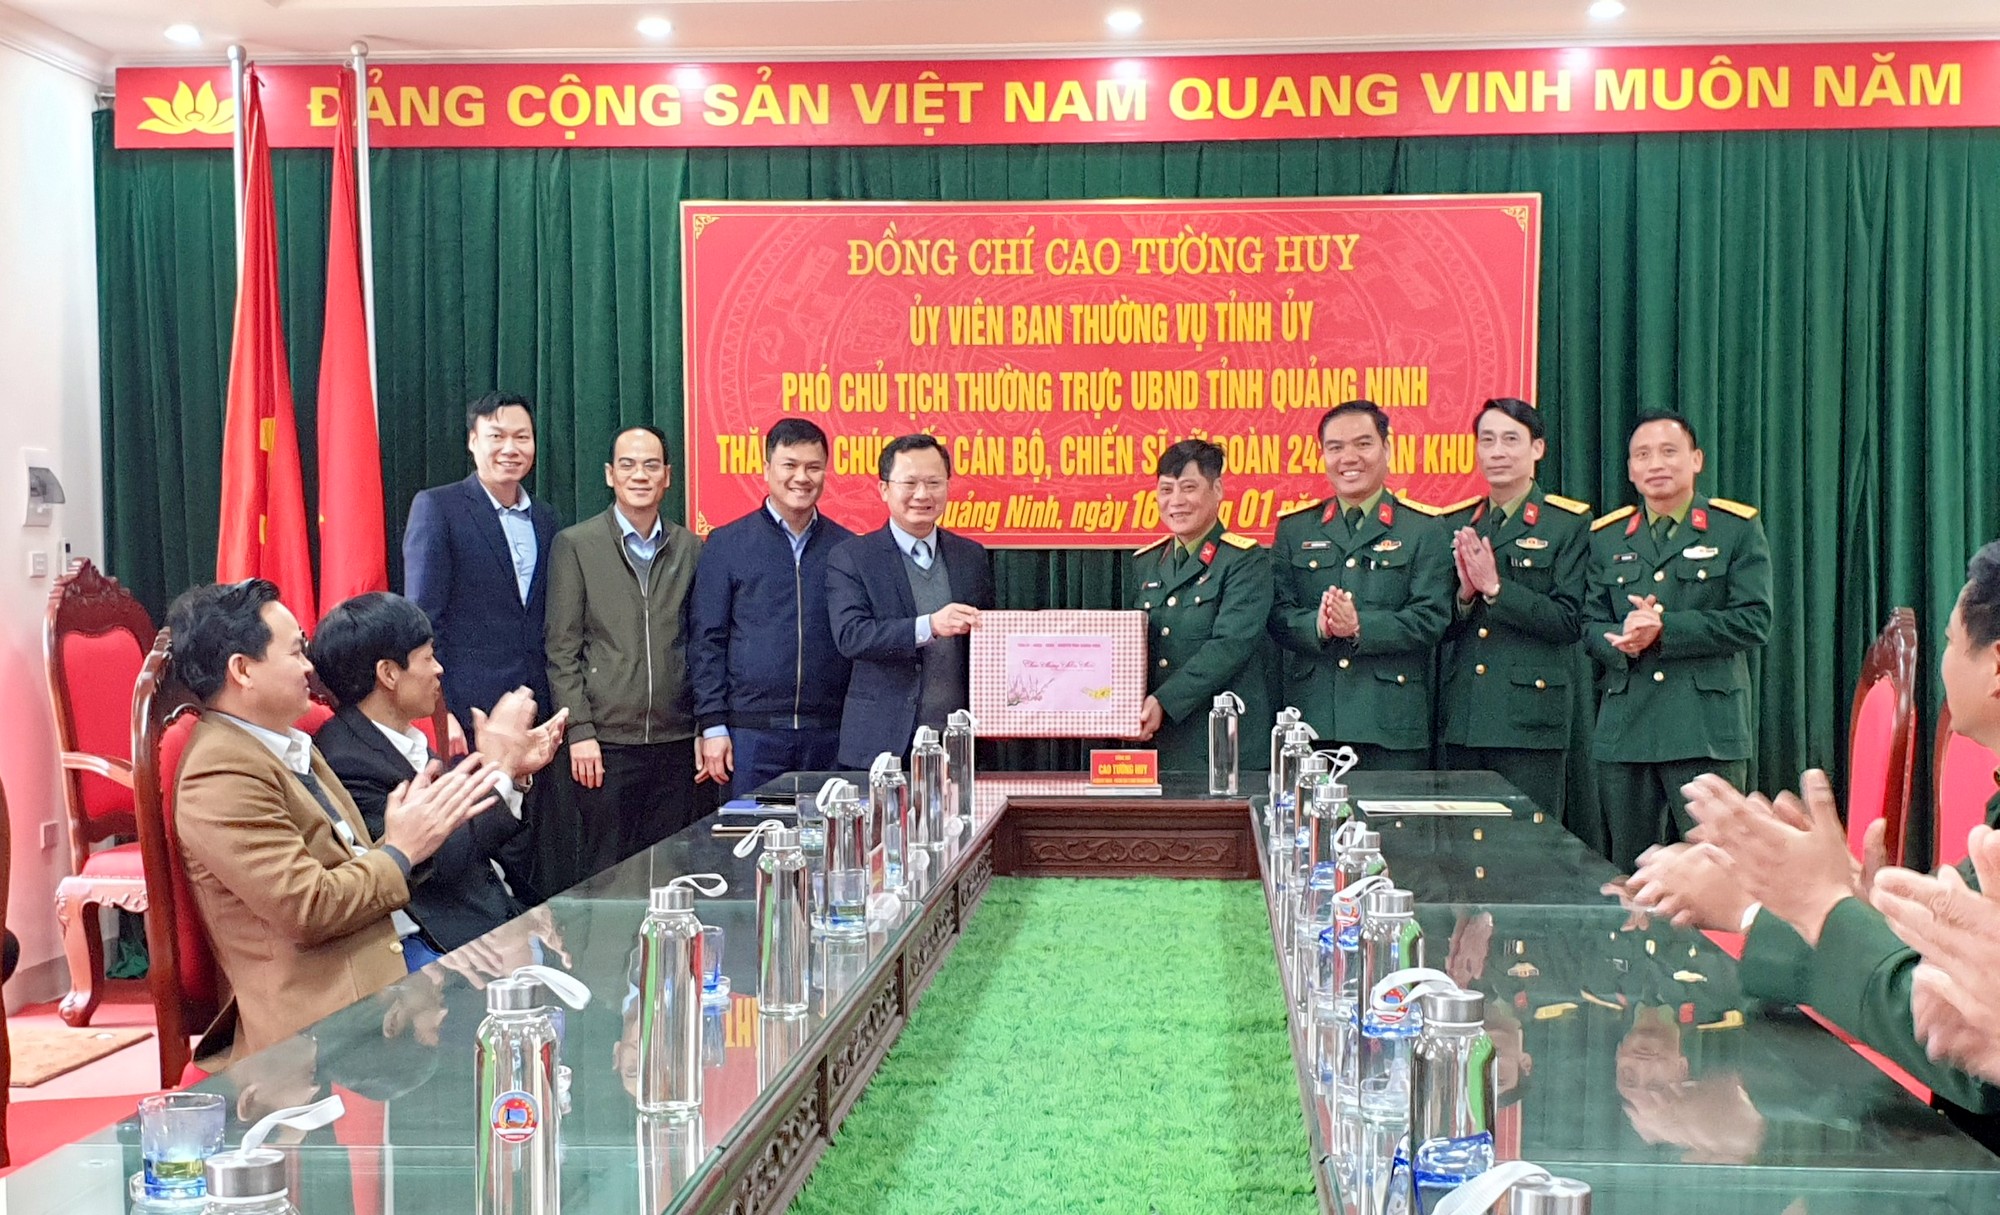 Đồng chí Cao Tường Huy, Phó Chủ tịch Thường trực UBND tỉnh Quảng Ninh 